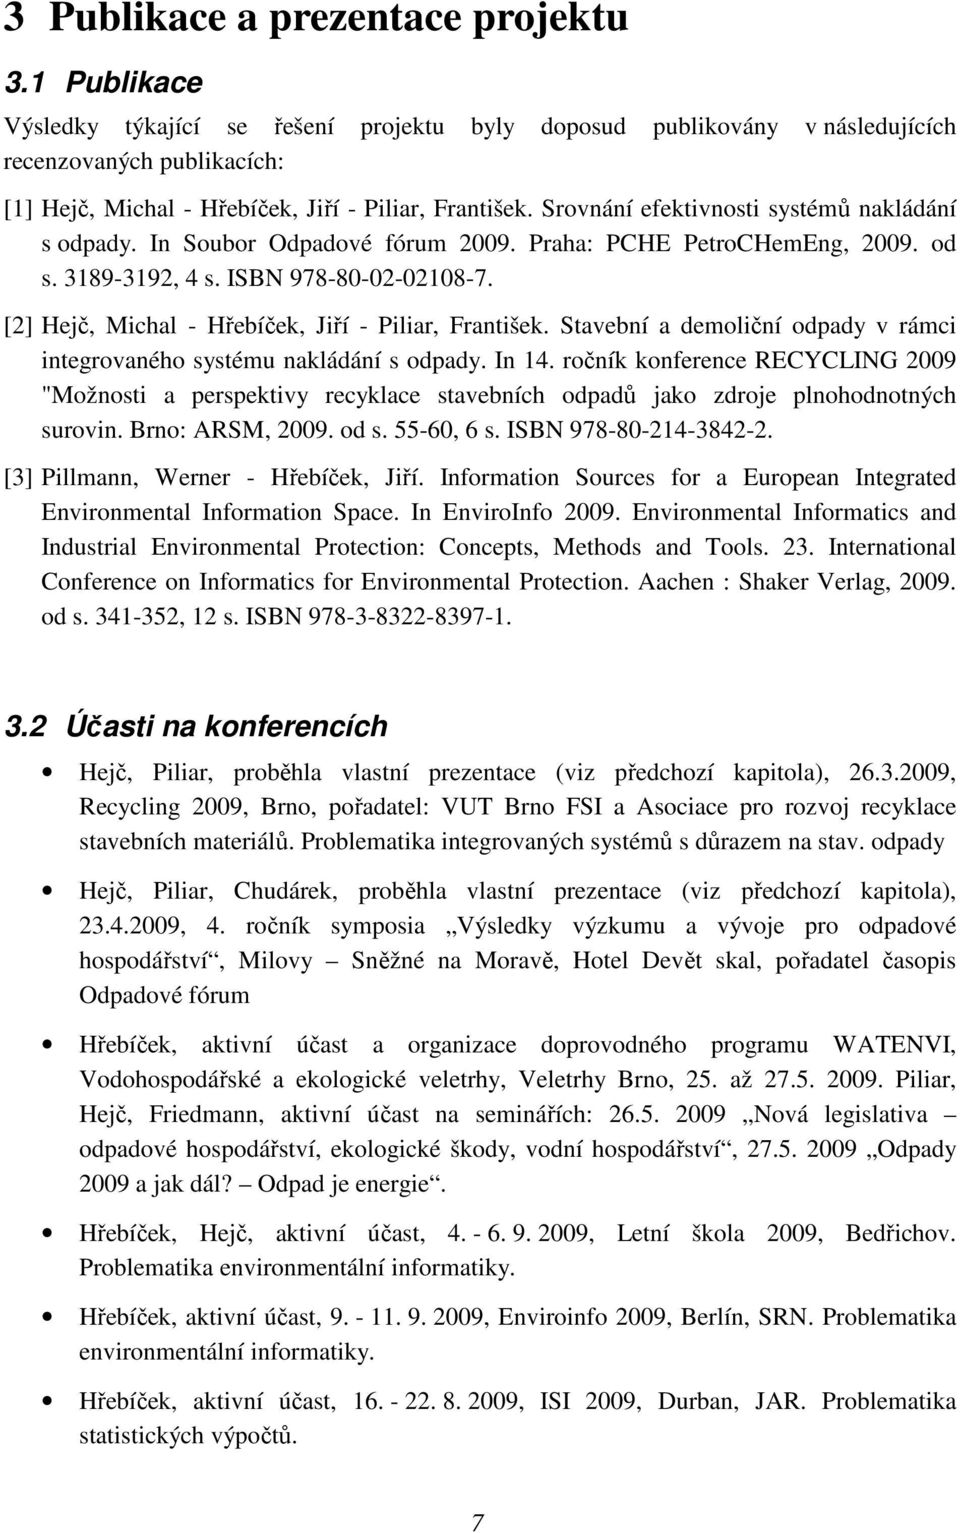 Srovnání efektivnosti systémů nakládání s odpady. In Soubor Odpadové fórum 2009. Praha: PCHE PetroCHemEng, 2009. od s. 3189-3192, 4 s. ISBN 978-80-02-02108-7.